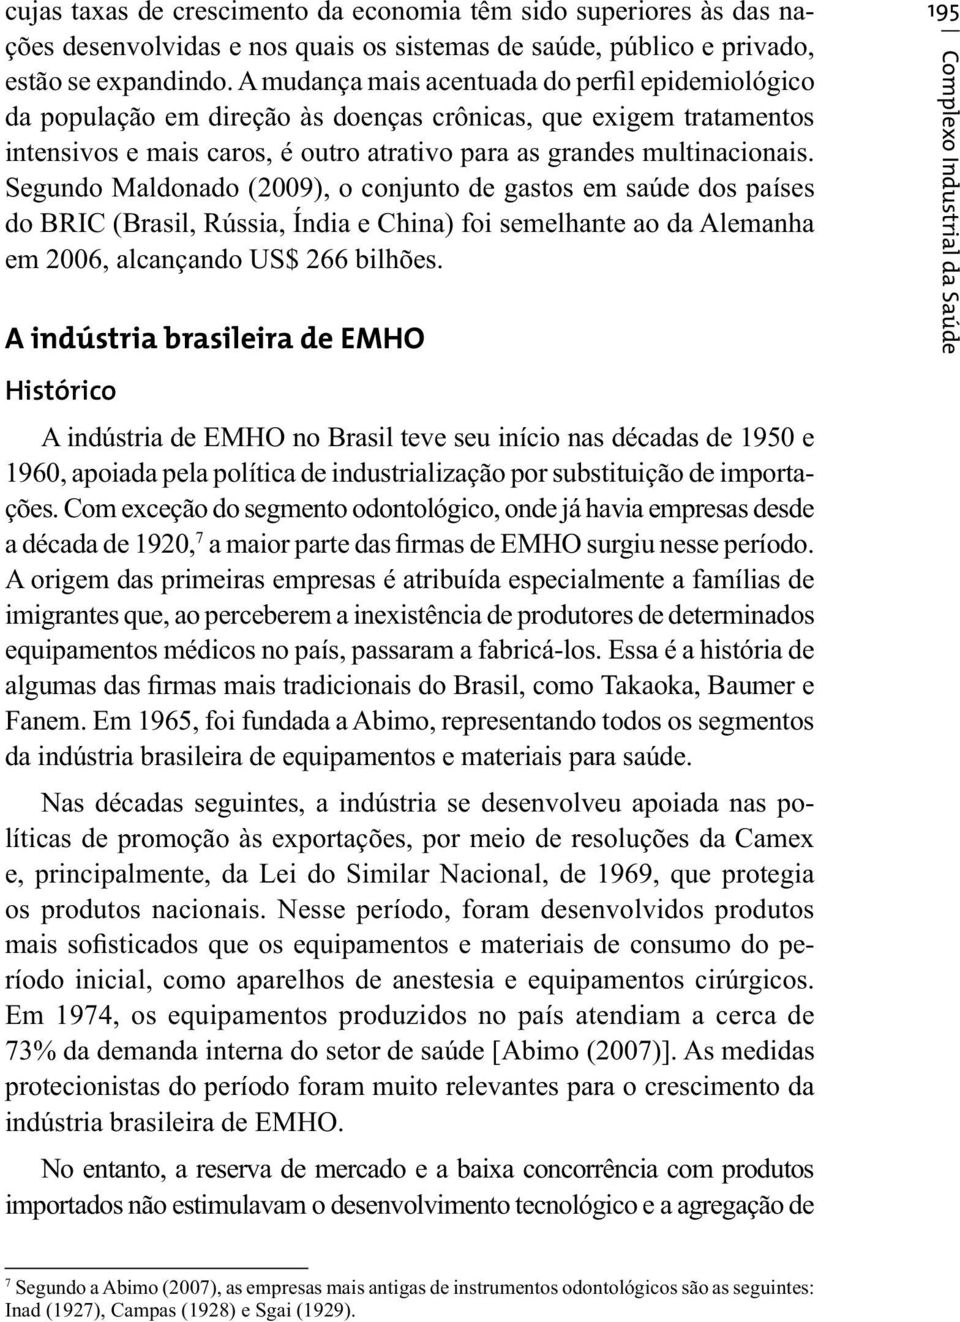 Segundo Maldonado (2009), o conjunto de gastos em saúde dos países do BRIC (Brasil, Rússia, Índia e China) foi semelhante ao da Alemanha em 2006, alcançando US$ 266 bilhões.